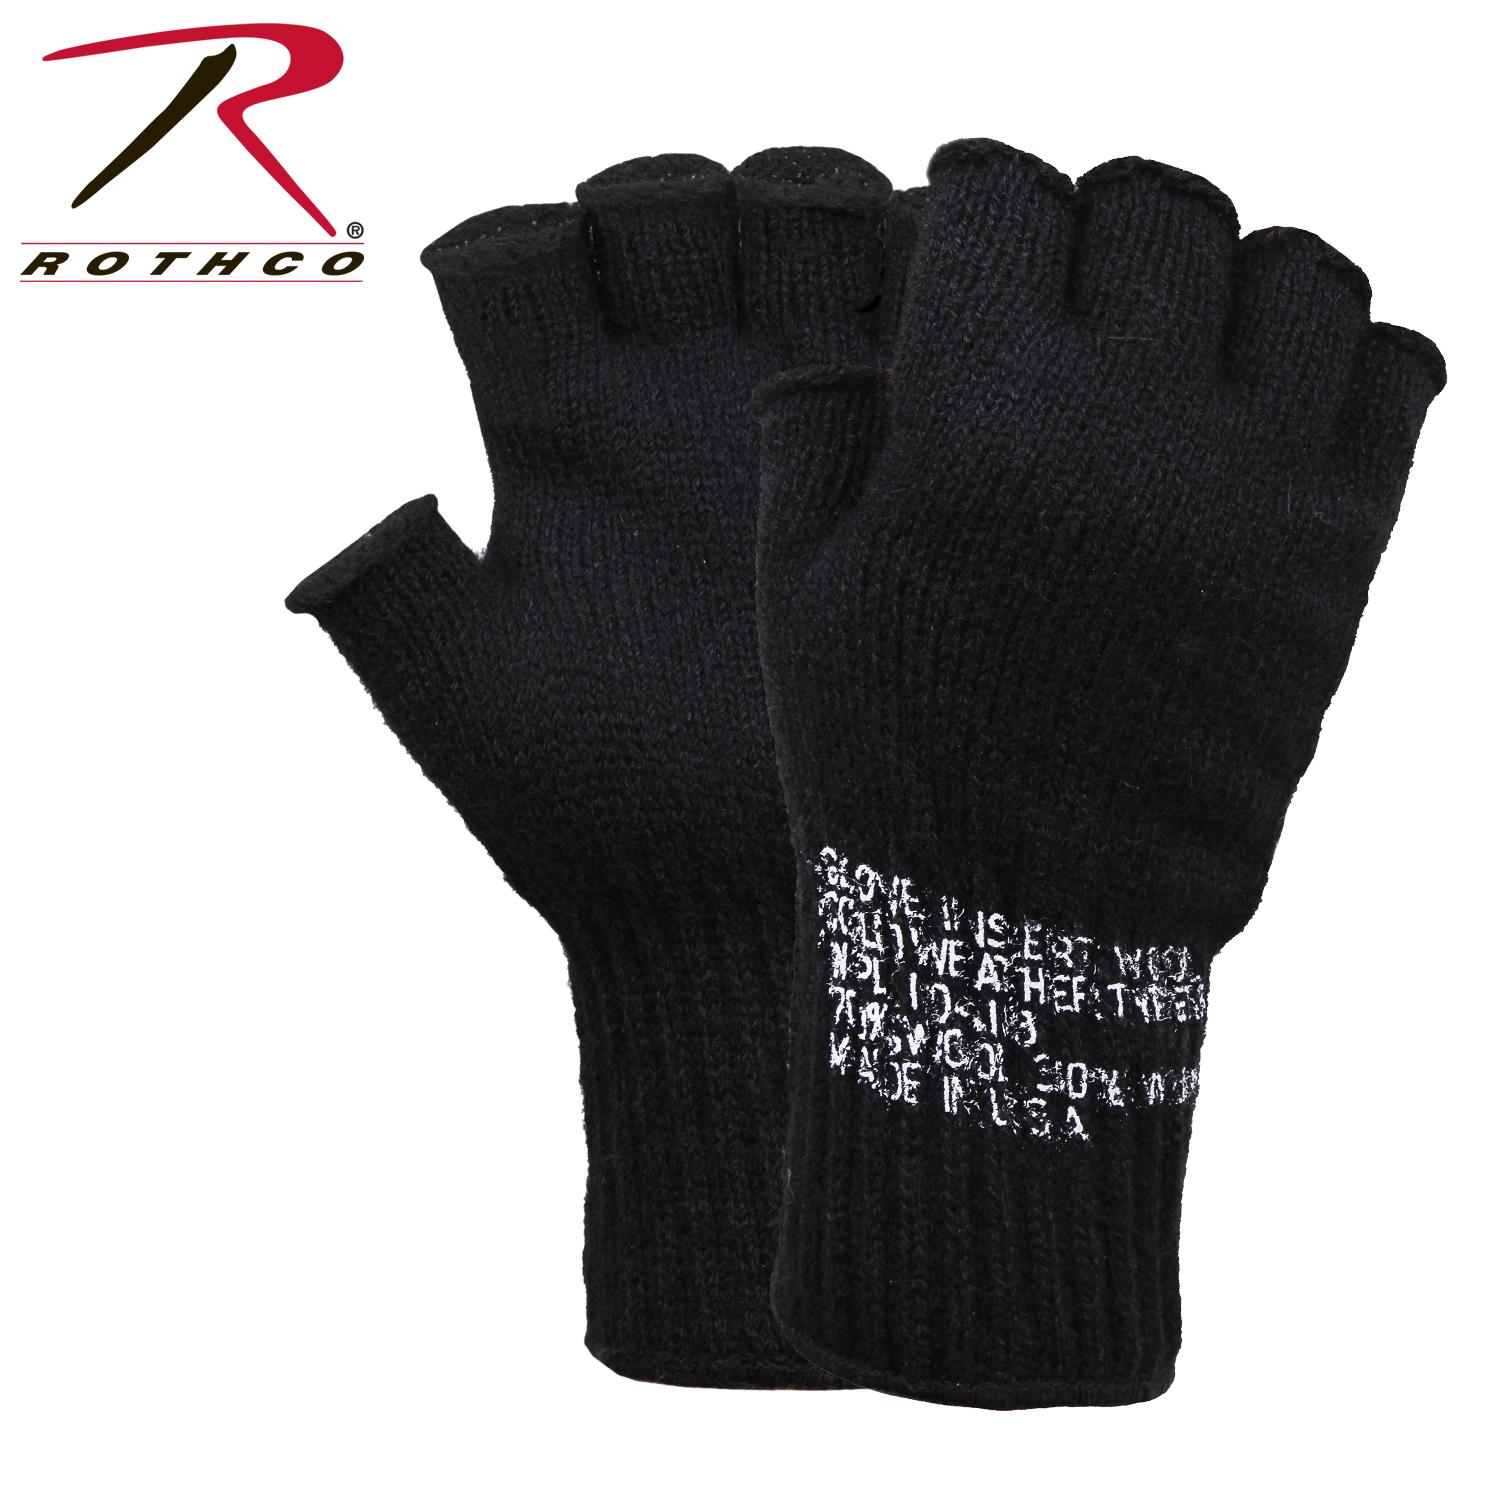 Fingerless wool gloves - Gloves & mitts